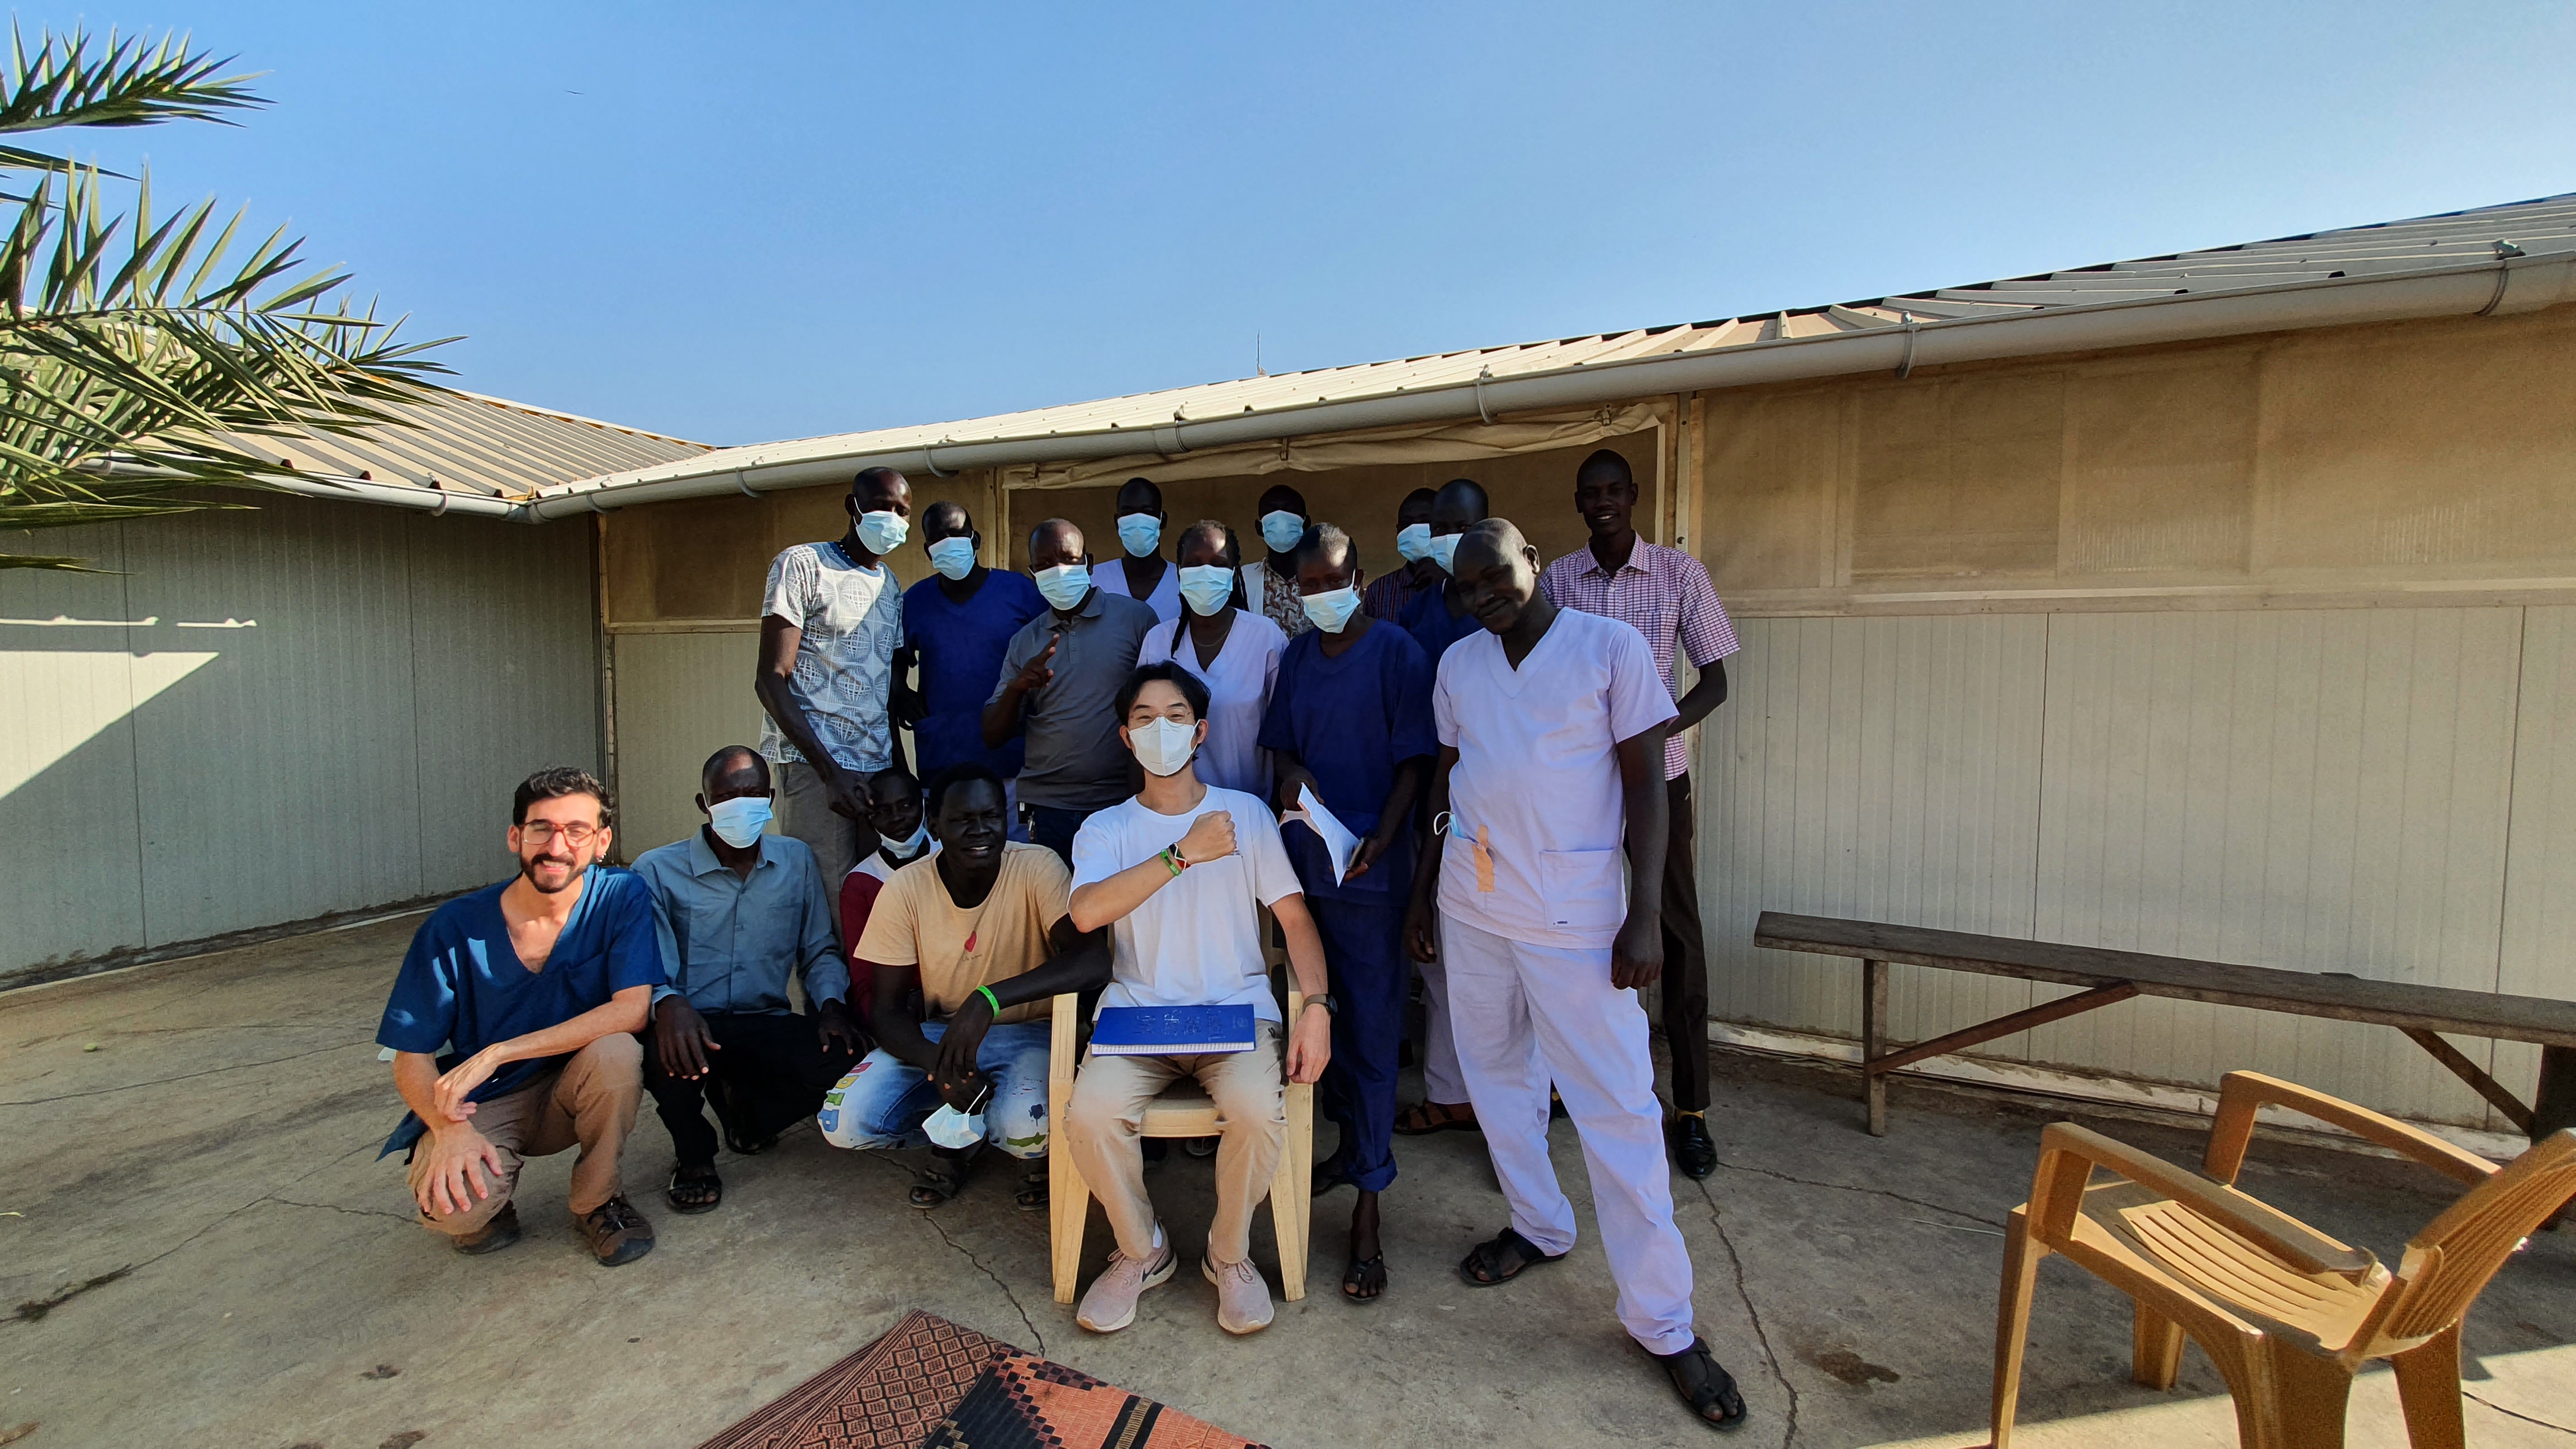 남수단 아곡 국경없는의사회 병원의 동료들과 함께 찍은 사진. ©국경없는의사회/김영웅